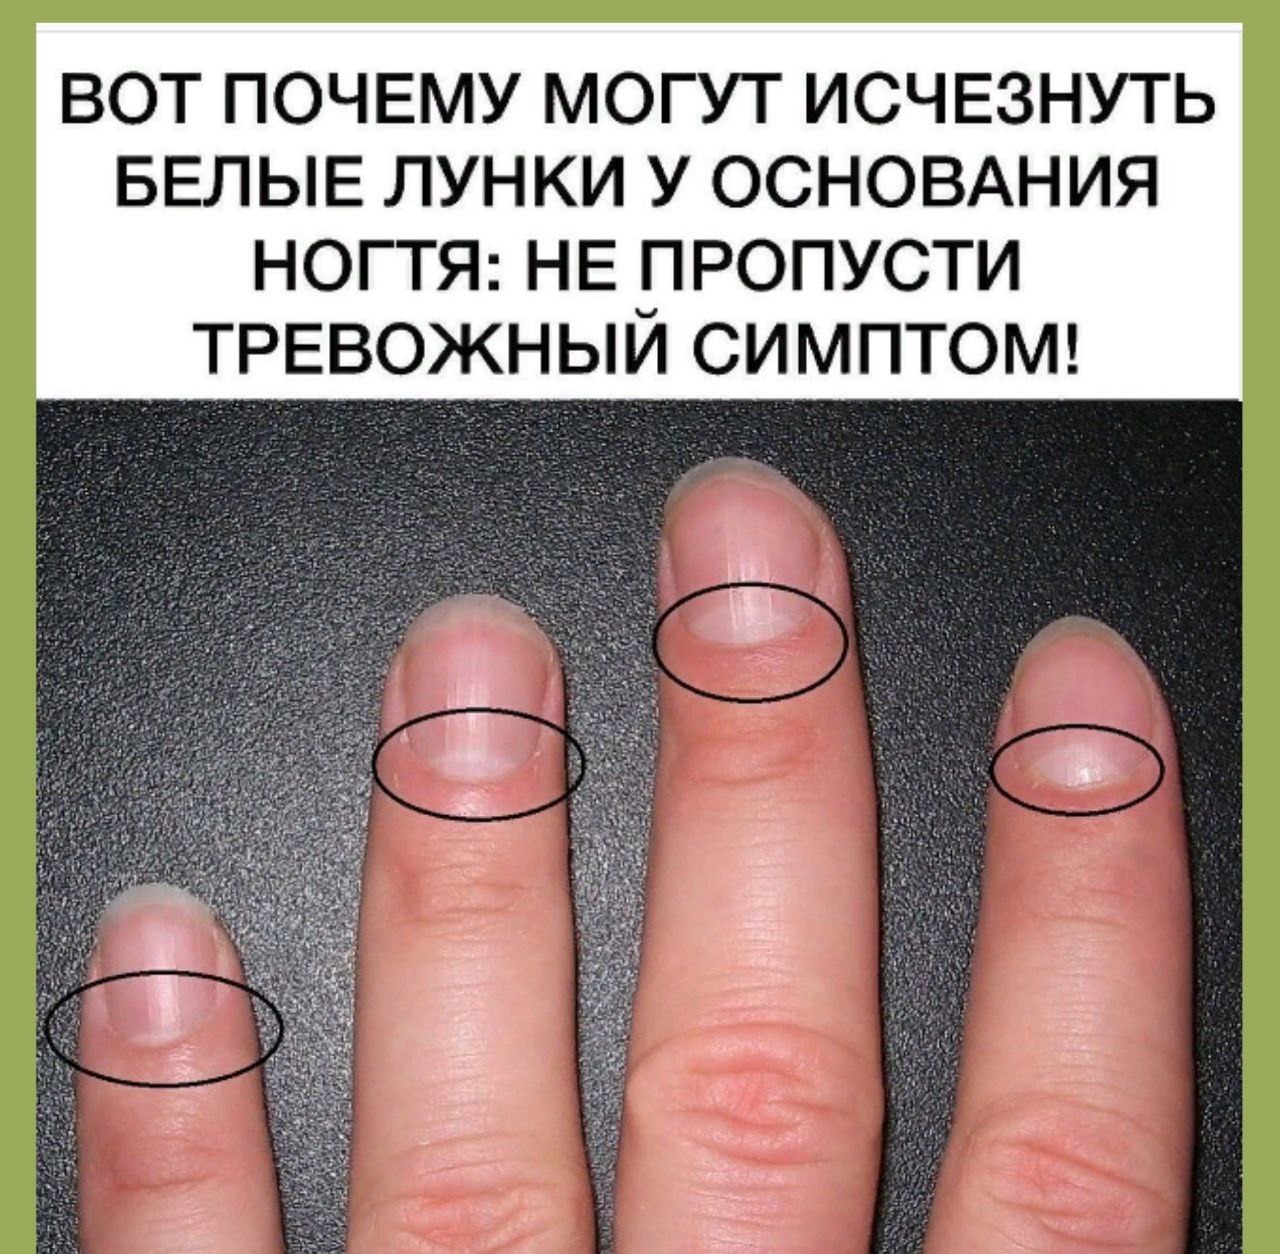 Большие лунки на ногтях рук